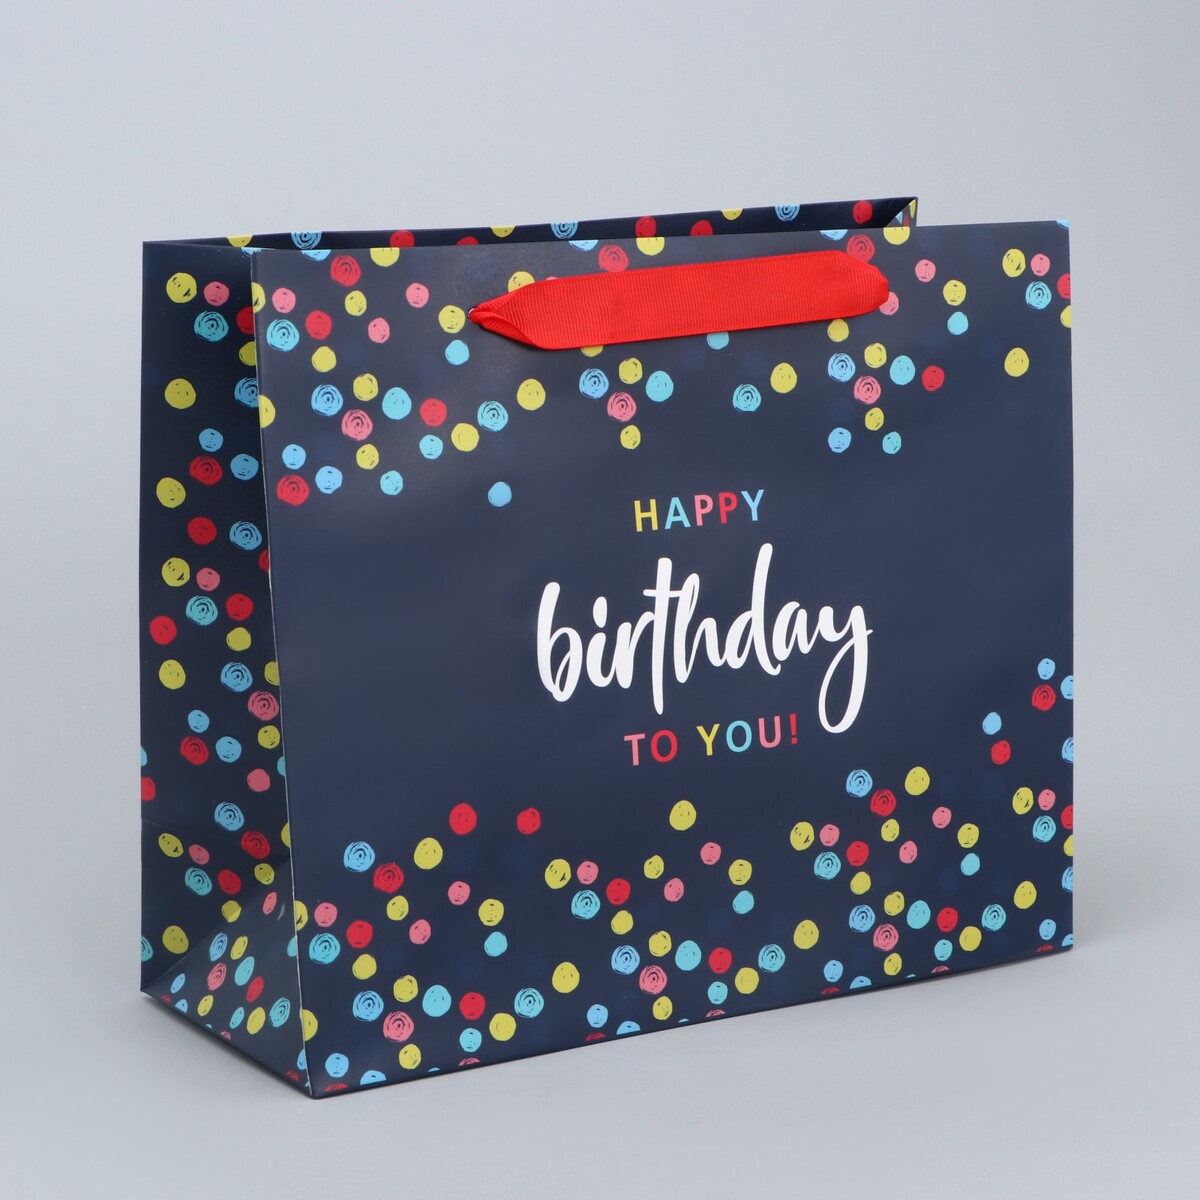 Пакет подарочный ламинированный горизонтальный, упаковка, пакет ламинированный happy birthday ml 27 х 23 х 8 см